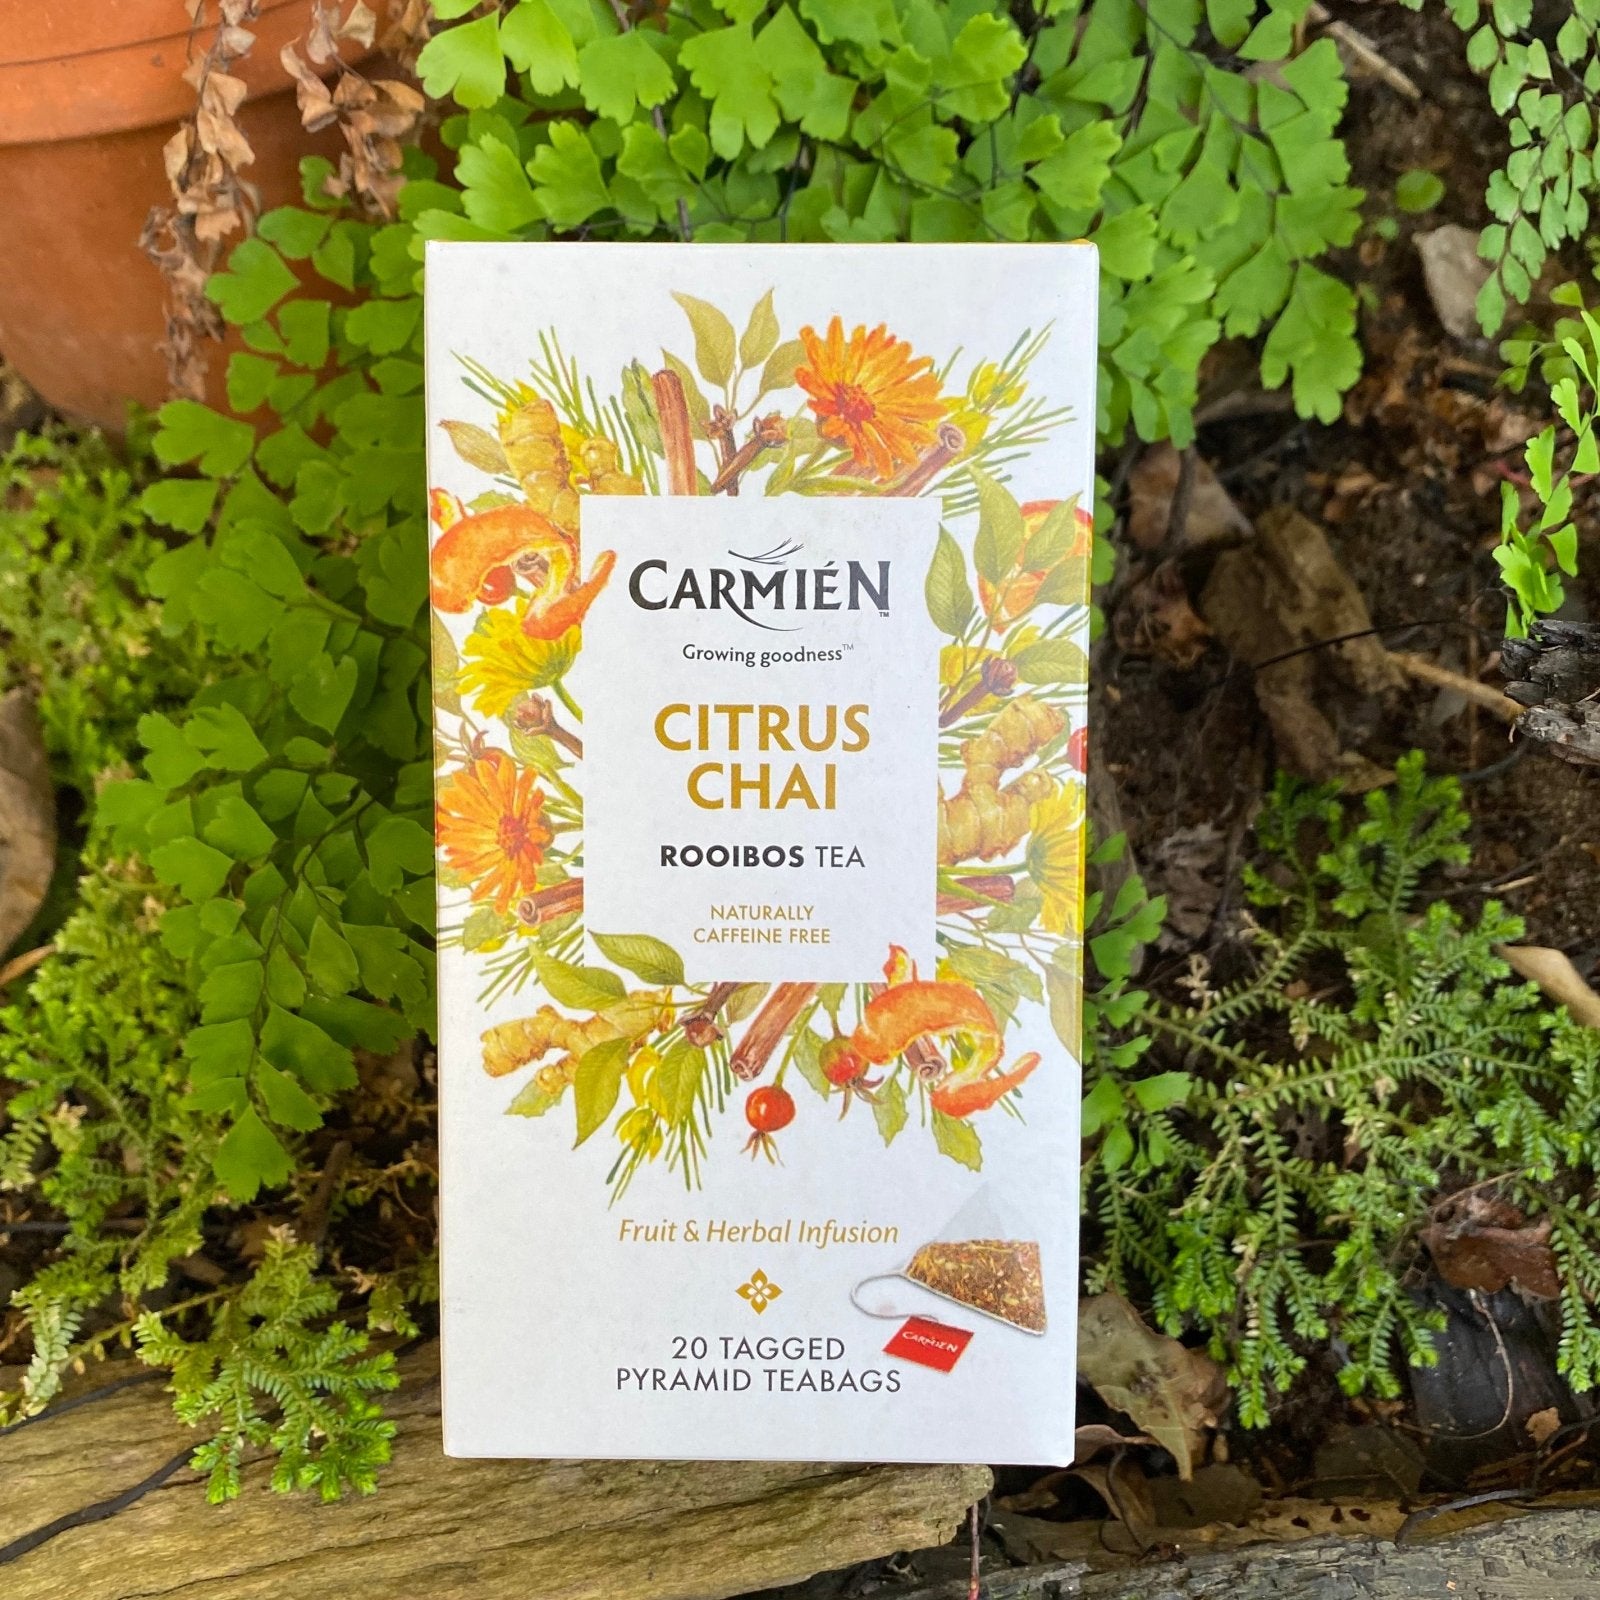 Carmien Citrus Chai Rooibos Tea (20 tagged pyramid teabags) - The Deli